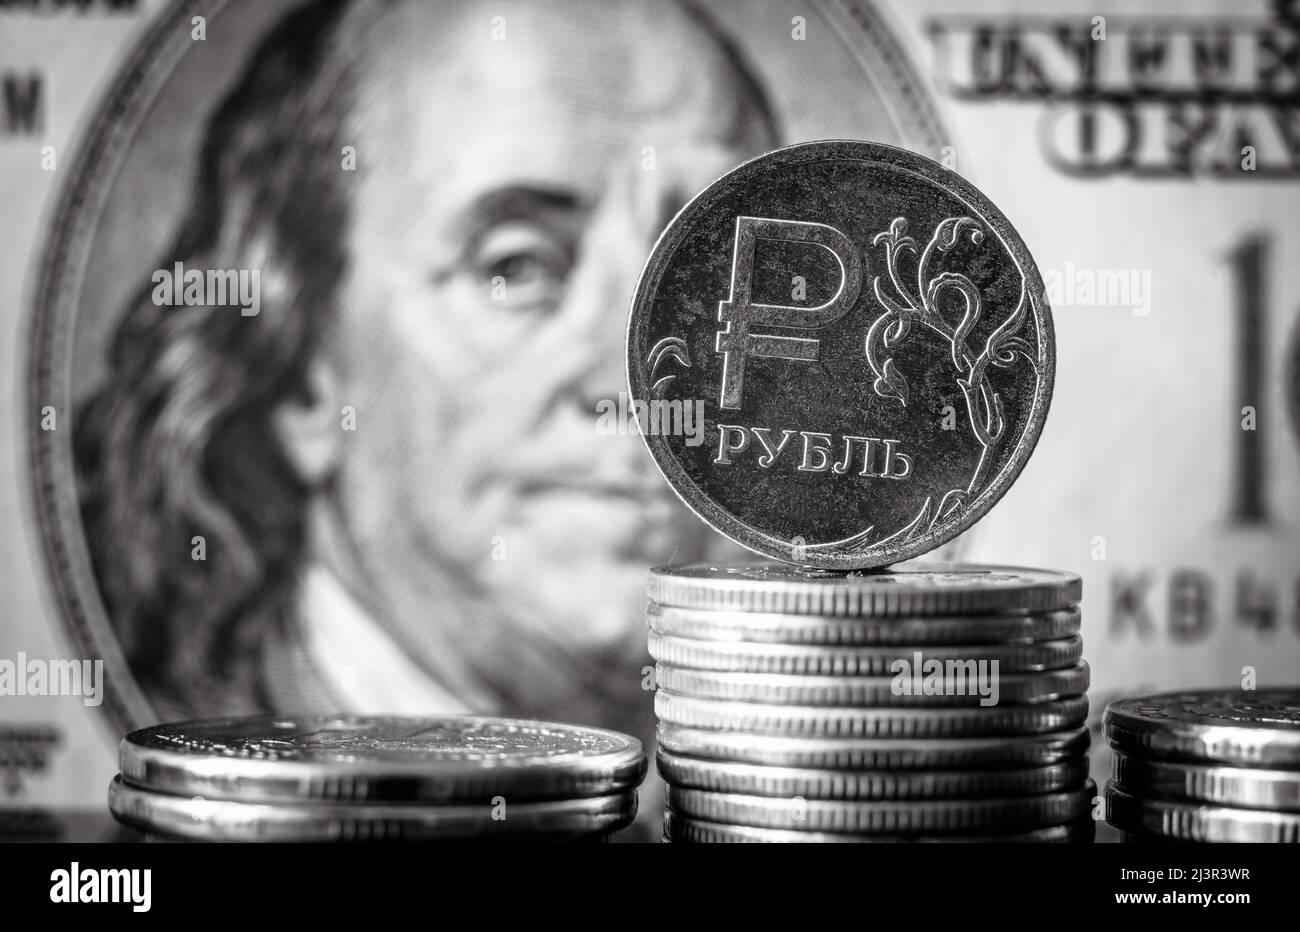 Das Geld Russlands und der USA in schwarz-weiß, russische Rubel-Münze auf dem Hintergrund des US-Dollar-Scheines. Konzept der Wirtschaftskrise, Rubelgaszahlung, Finanzen, Stockfoto